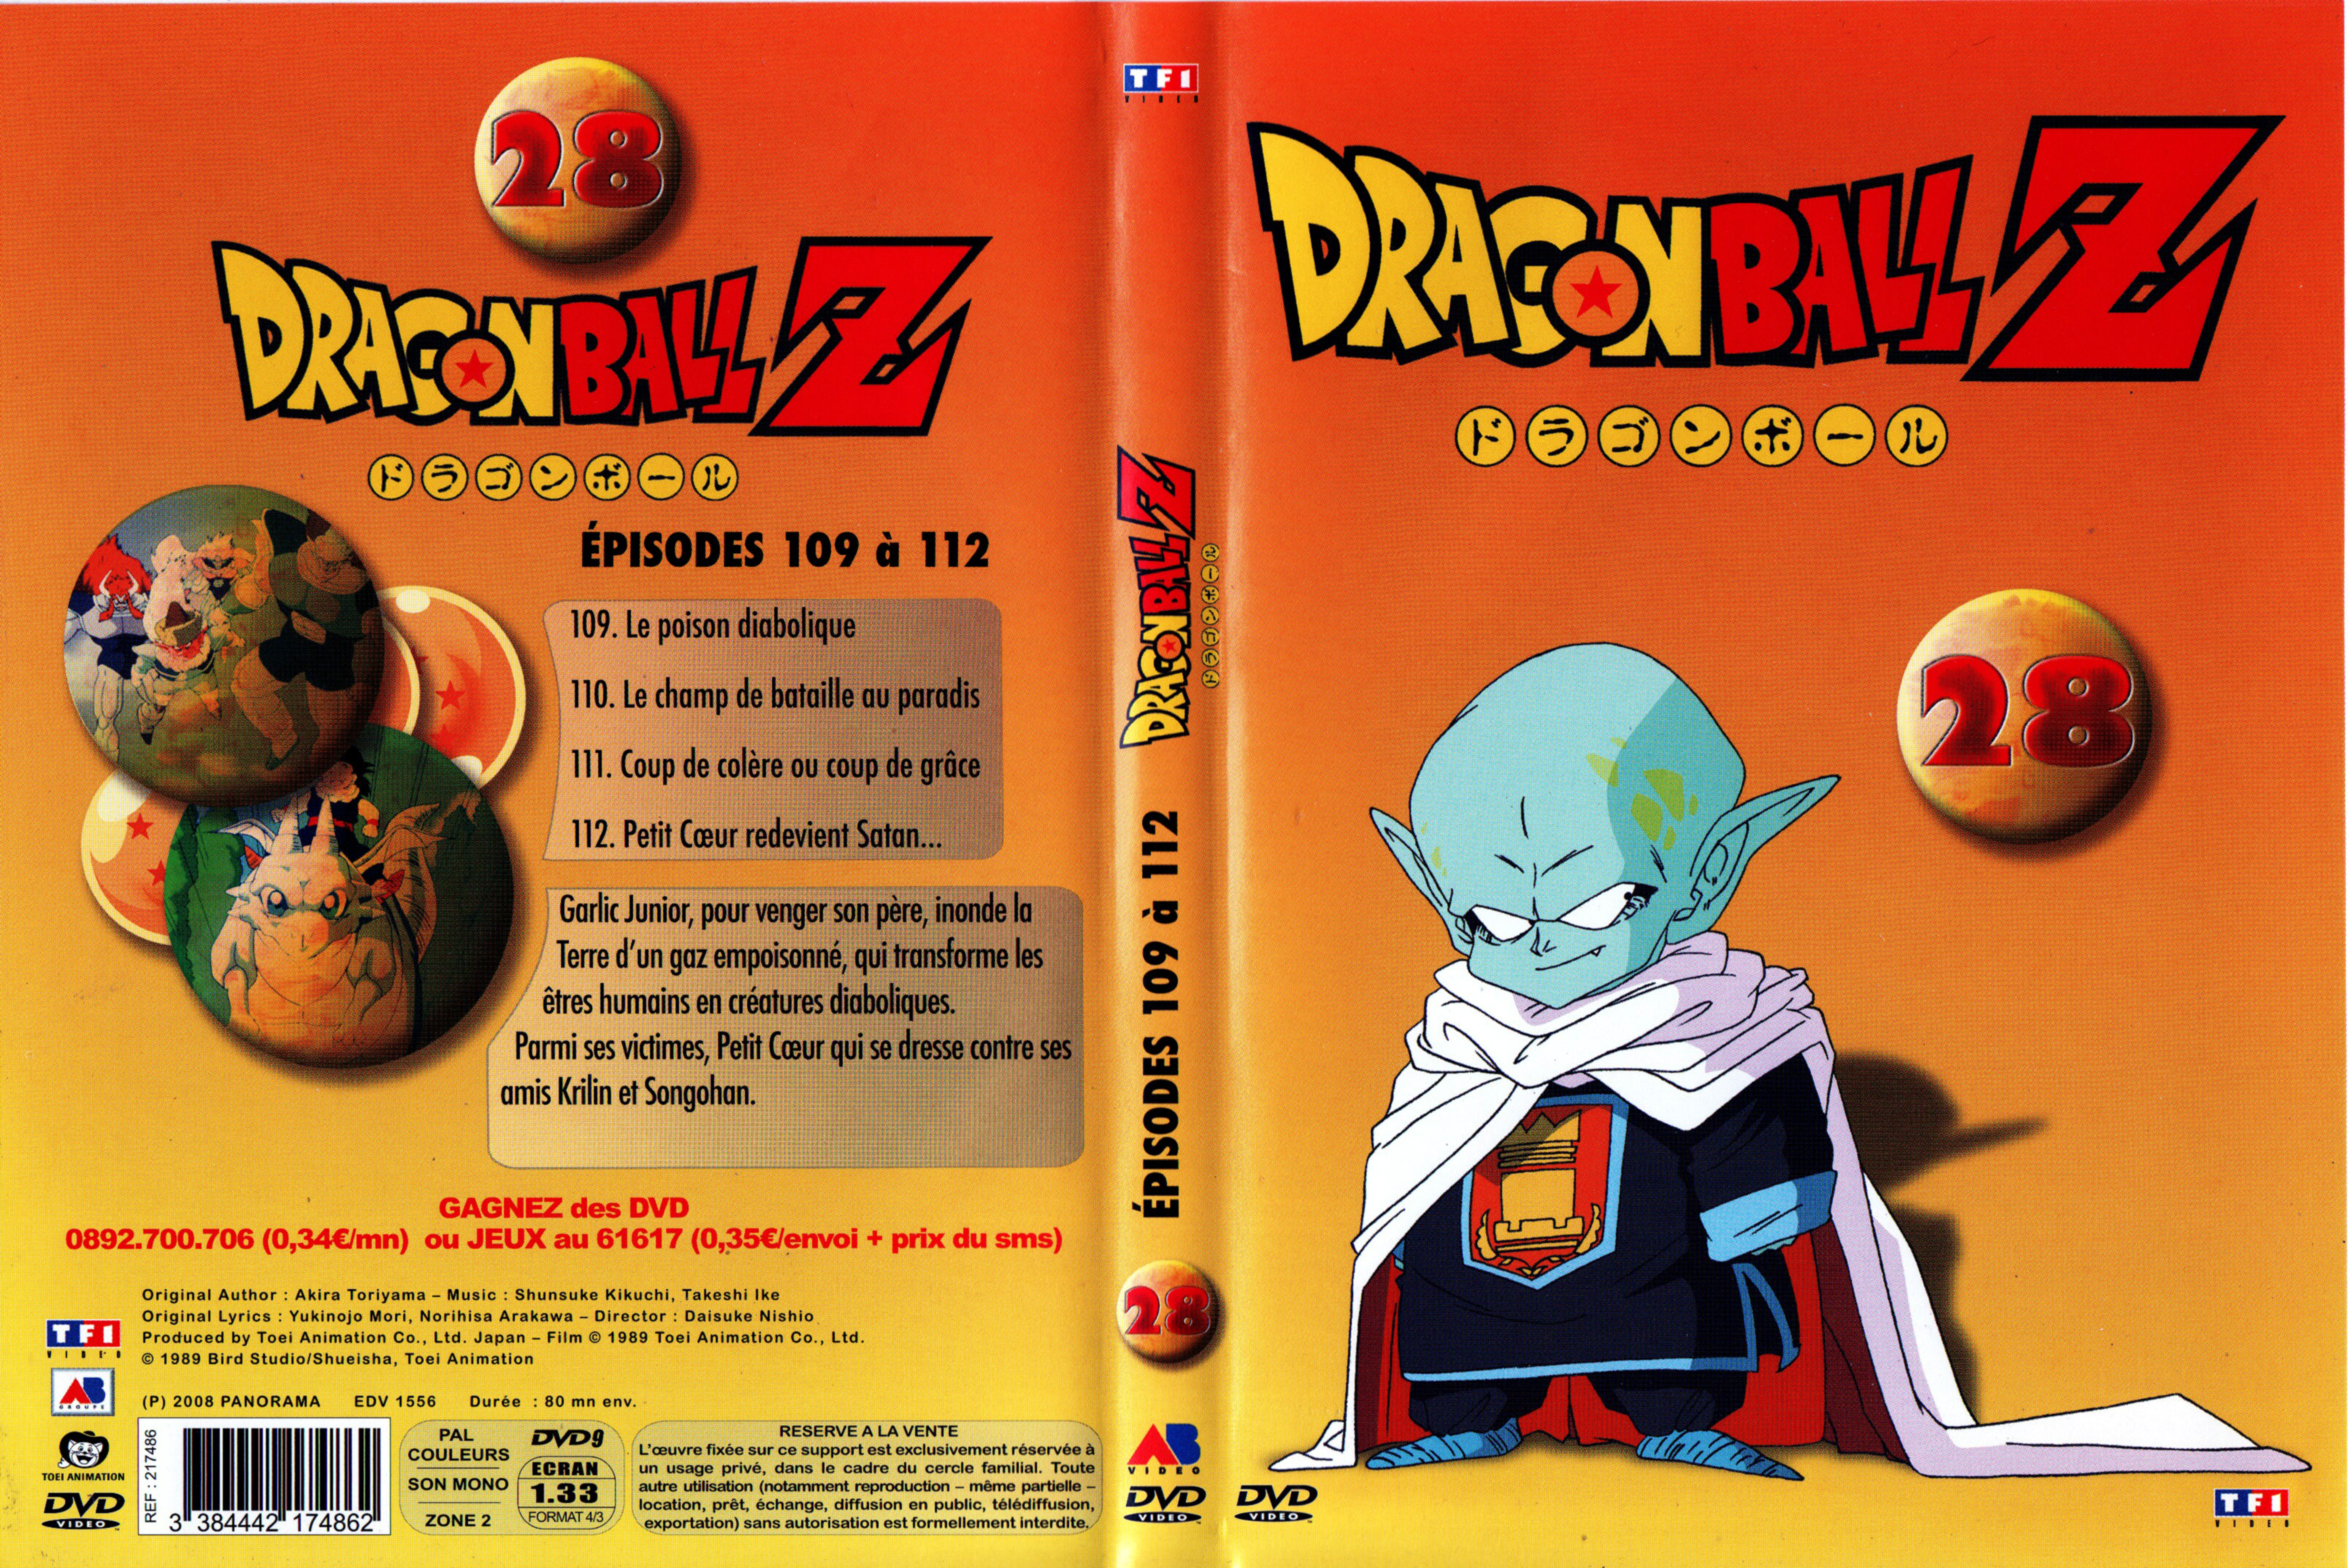 Jaquette DVD Dragon Ball Z vol 28 v2